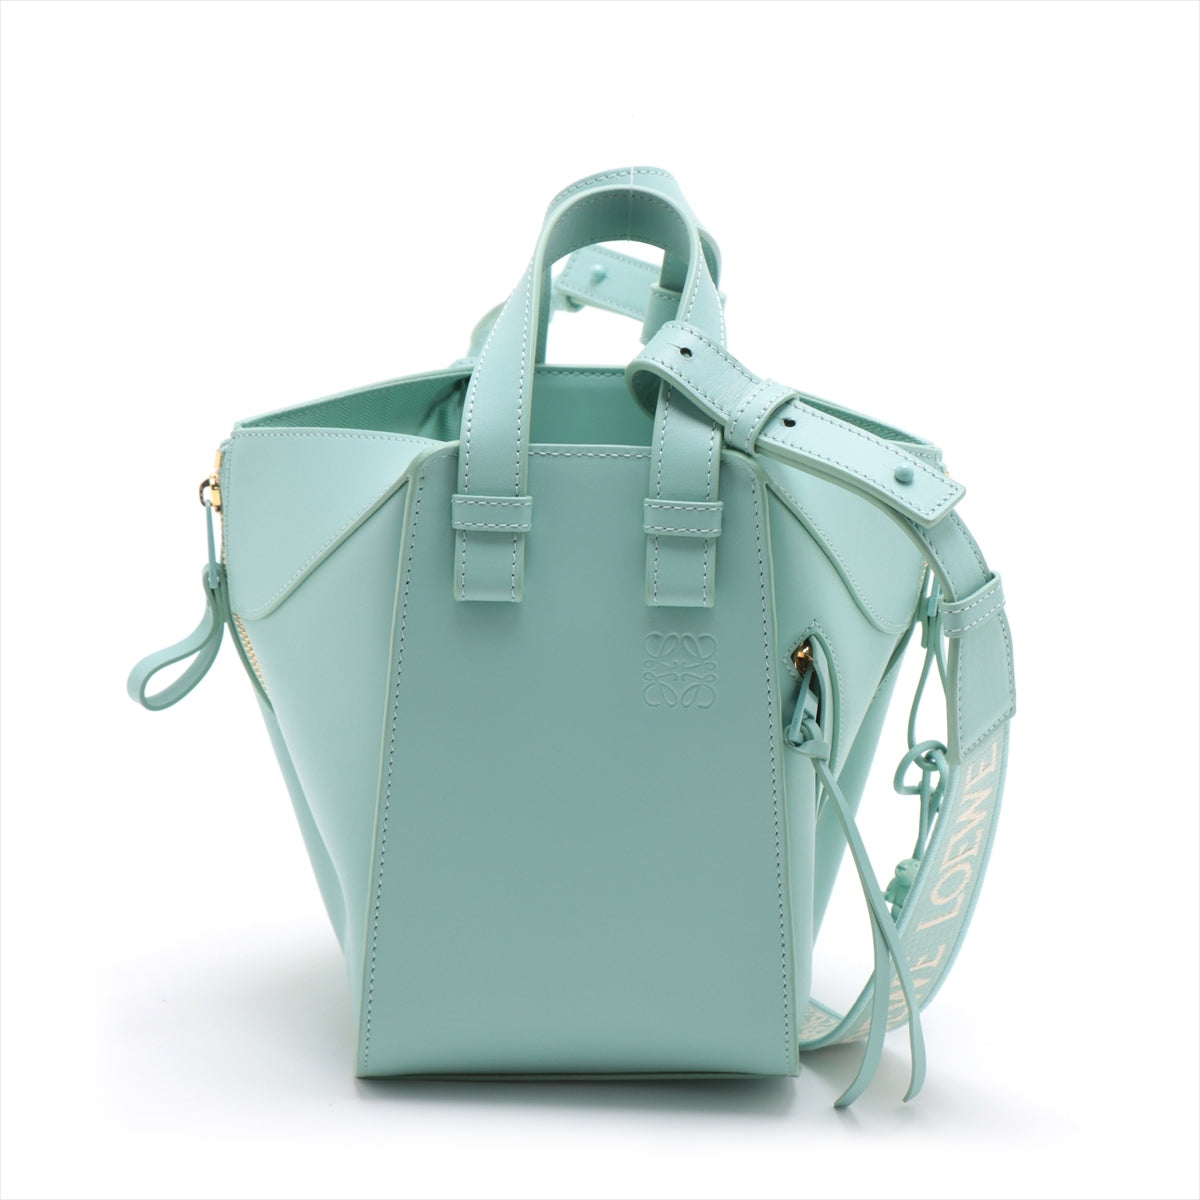 Loewe Hammock compacts Leather 2way handbag Blue